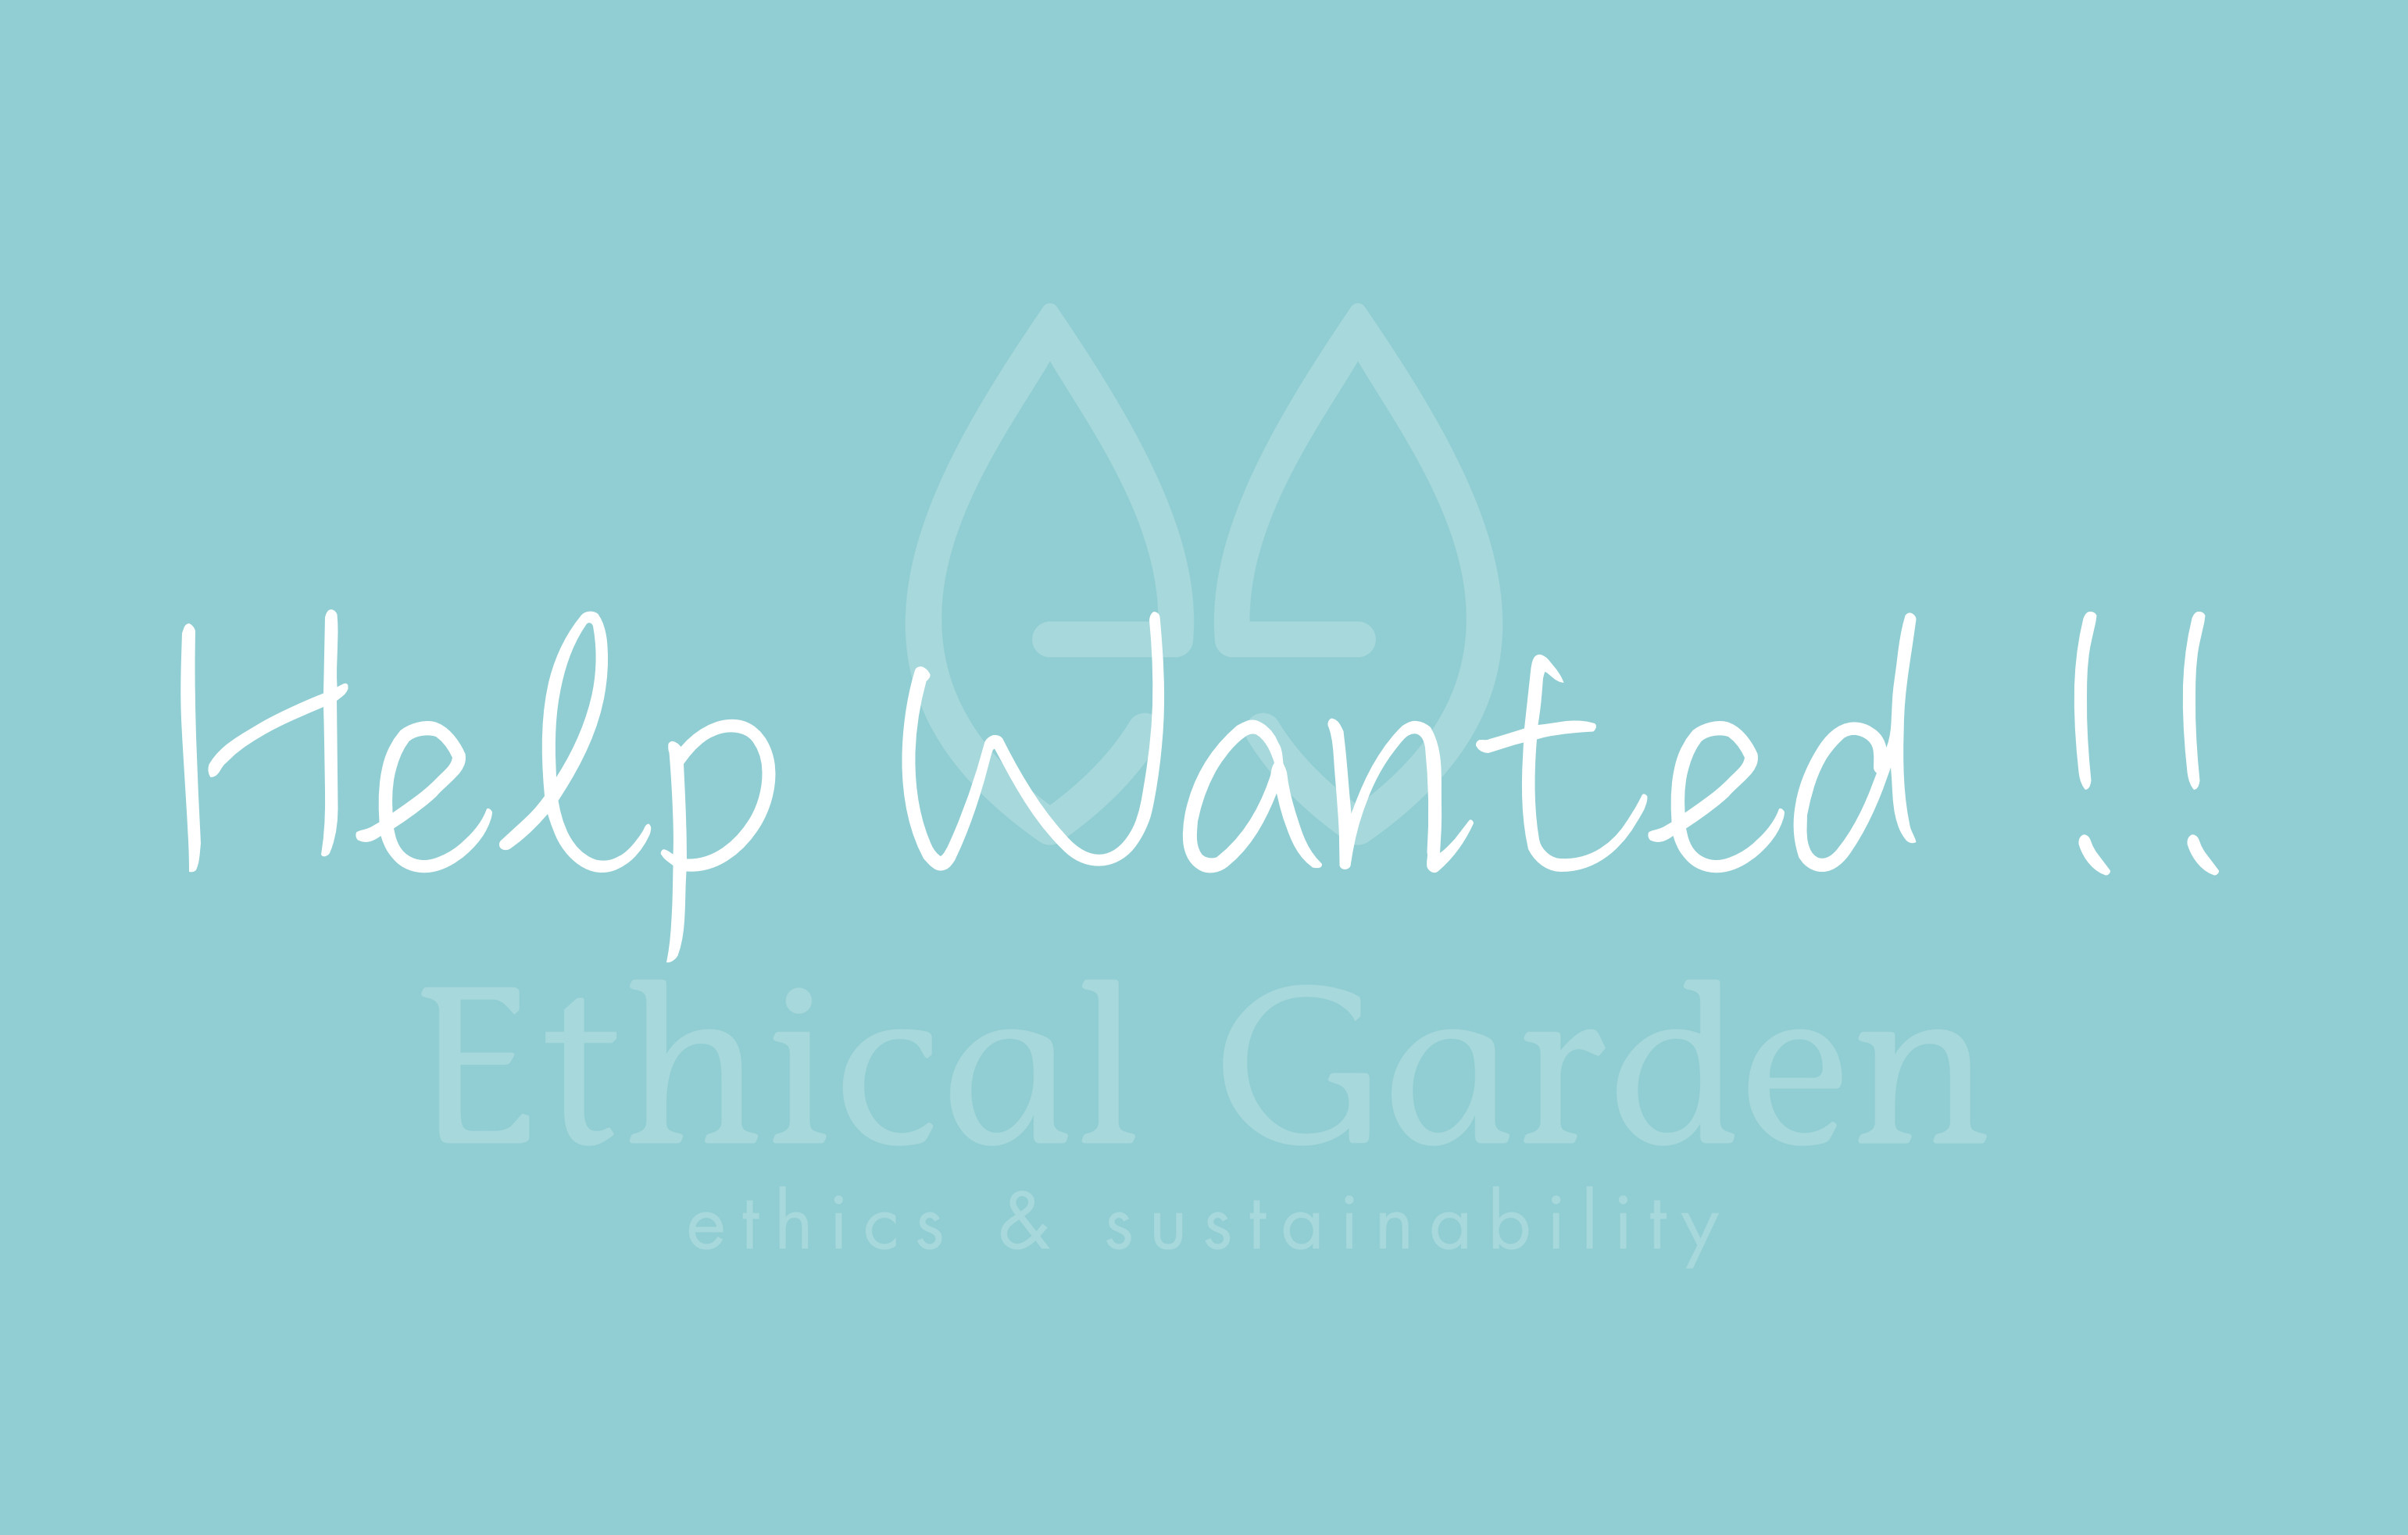 Ethical_Garden_logo_d2.jpg